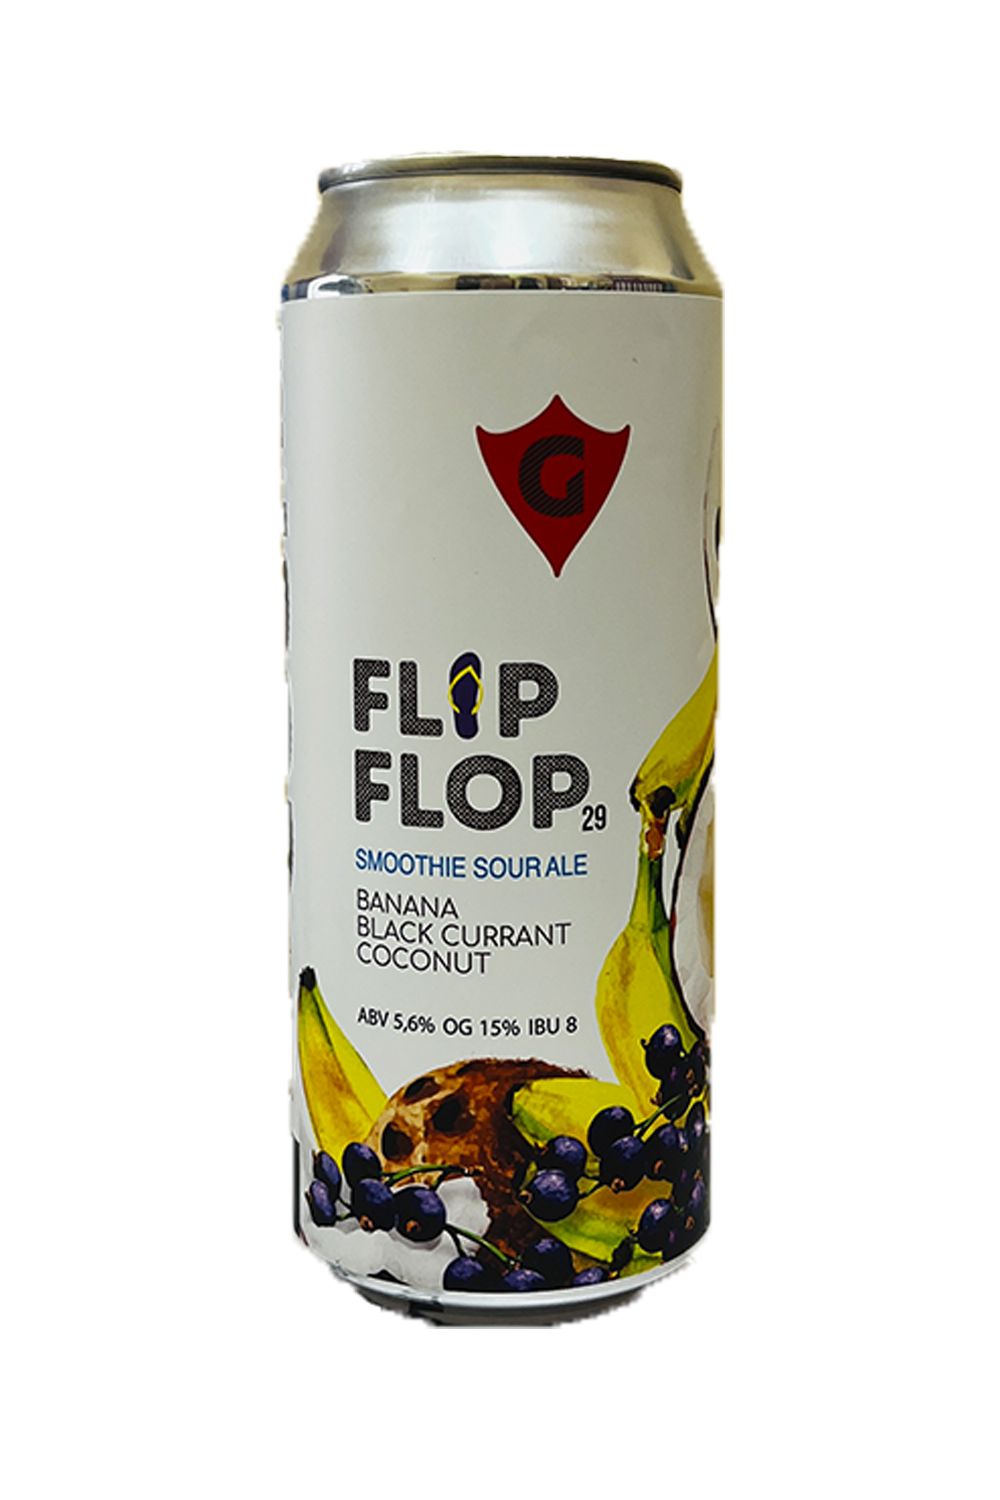 Пиво Гуси Специальный Эль (FlIp Flop 29) 5,6% ж/б 0,5 л